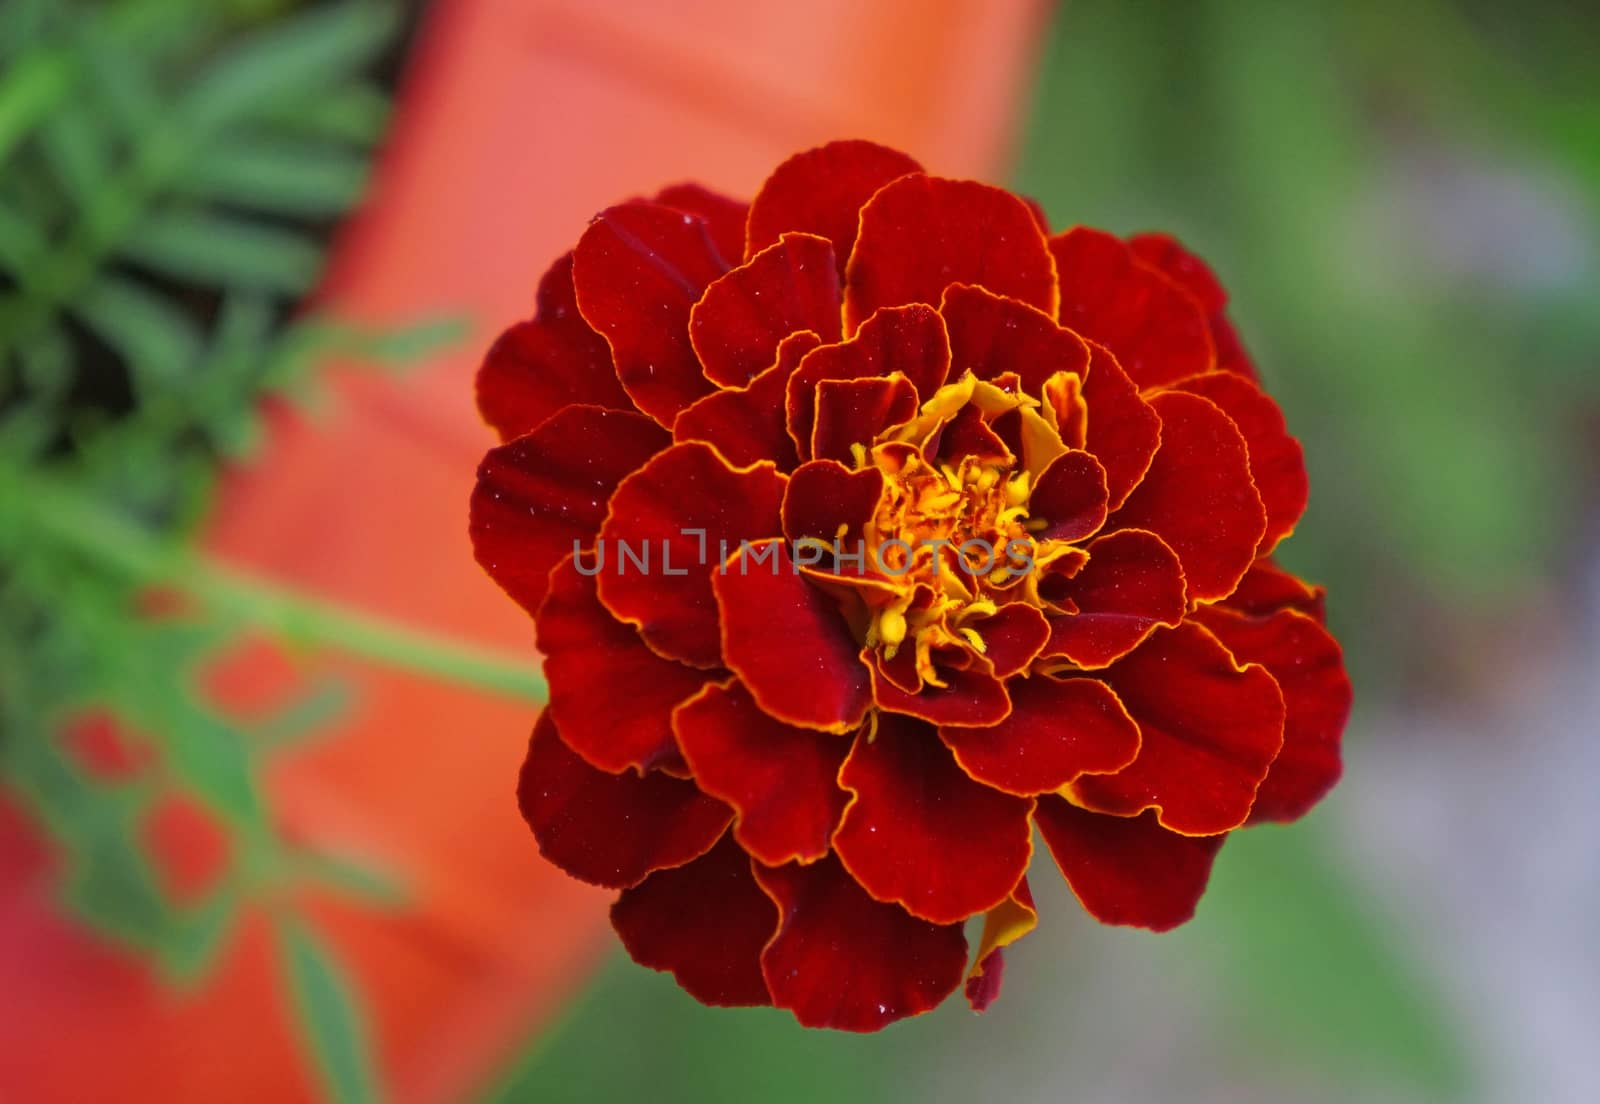  A marigold flower close-up                              